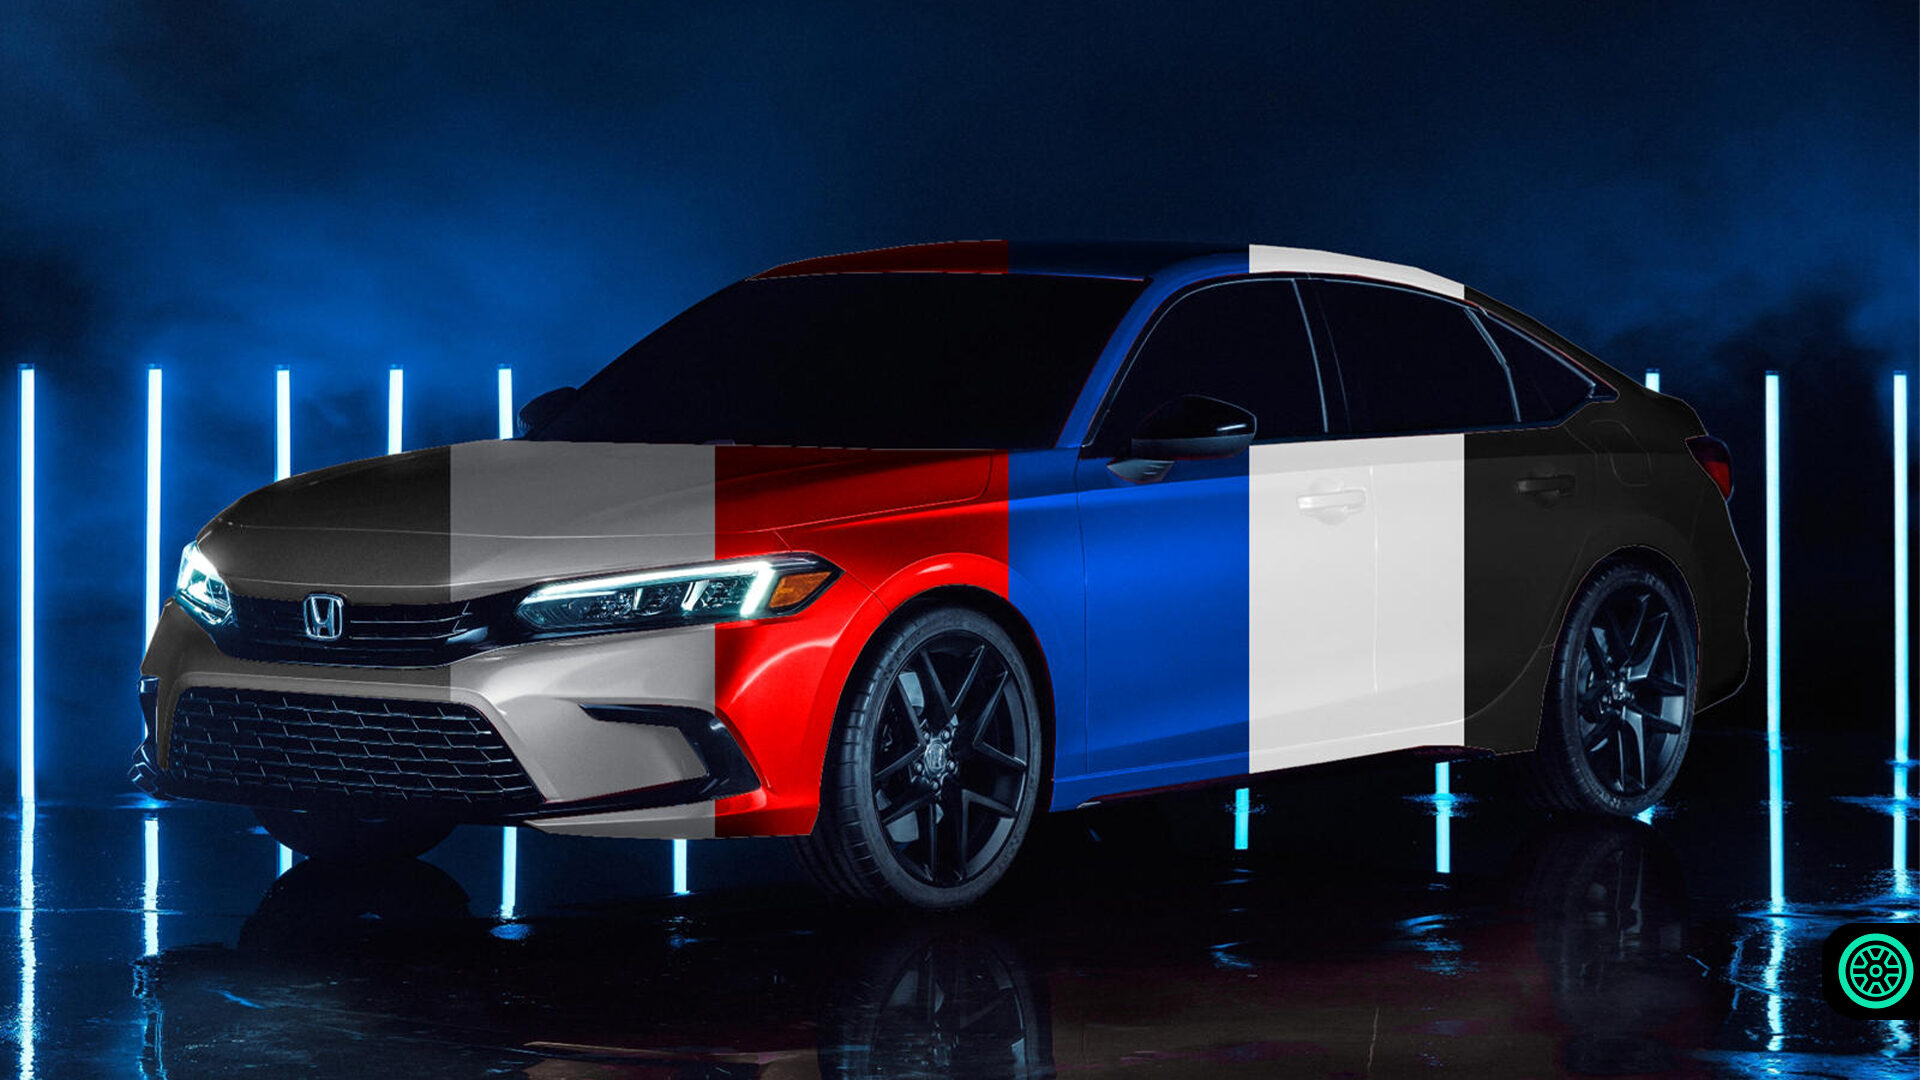 2022 Honda Civic sızan renk seçenekleri ile karşımızda 1